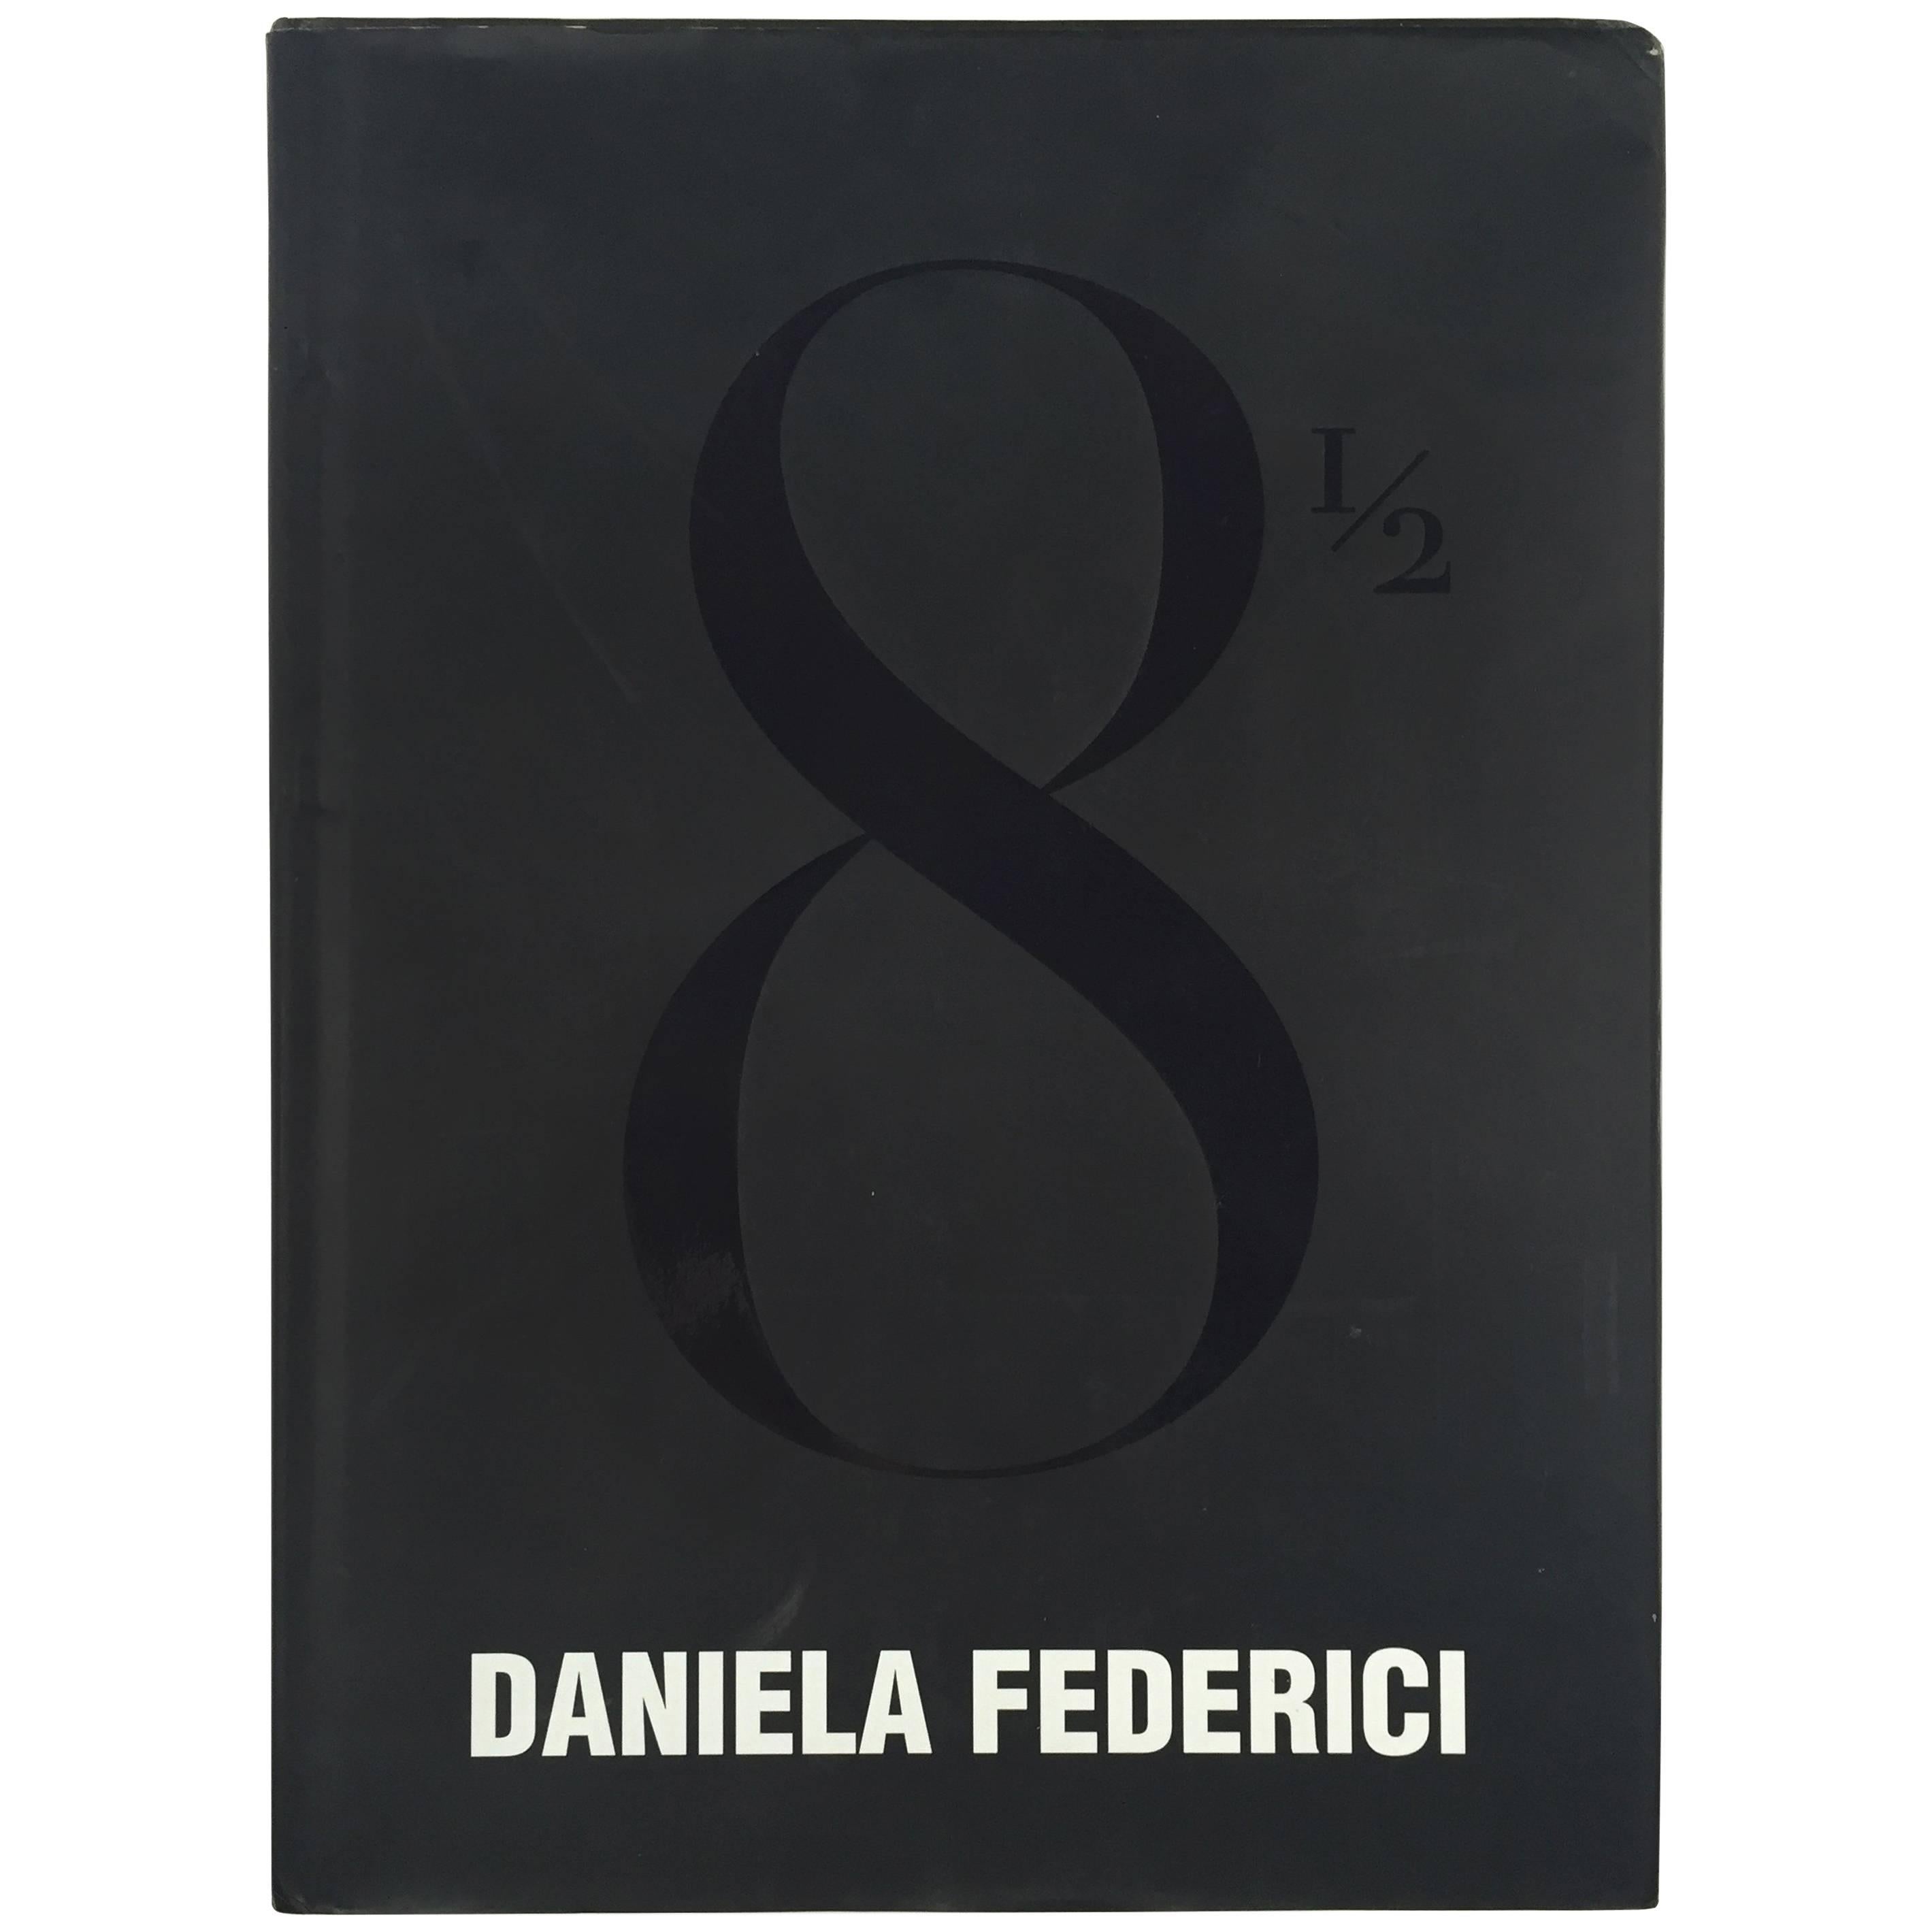 ""Daniela Federici 8"" Buch, 2002